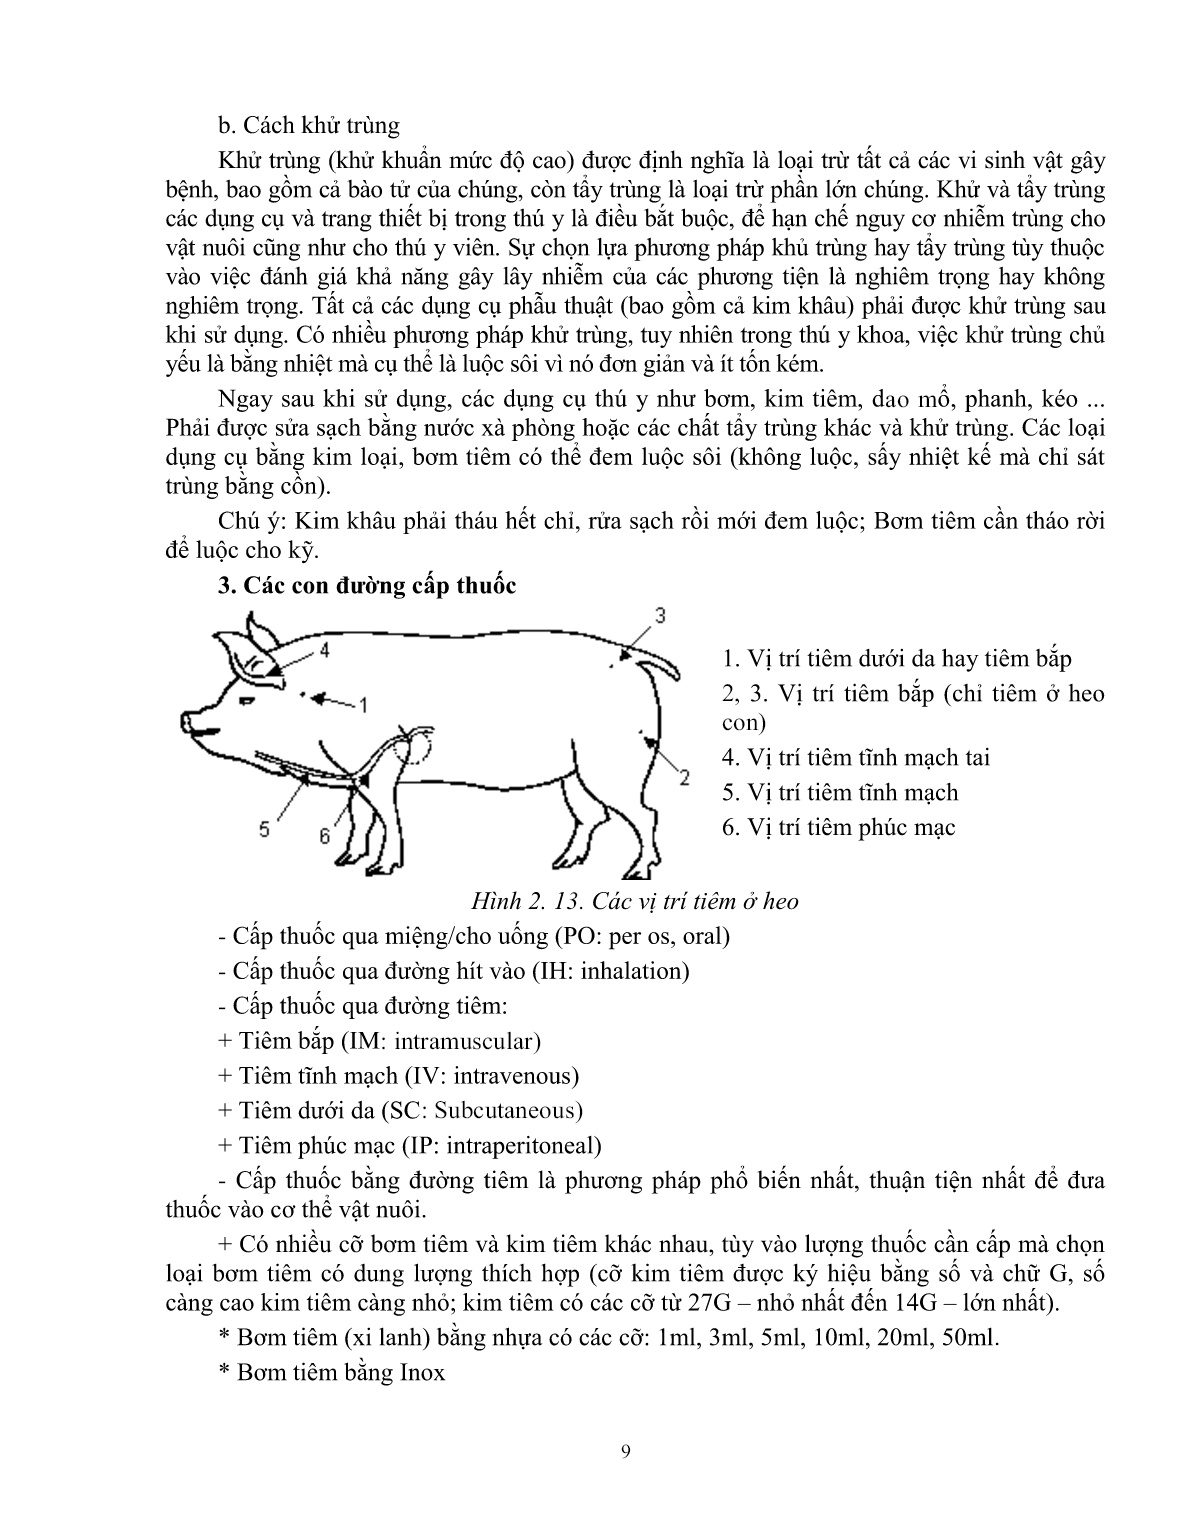 Giáo trình Một số kiến thức cơ bản thực hành chăn nuôi – thú y áp dụng cho heo (Trình độ: Đào tạo dưới 3 tháng) trang 10